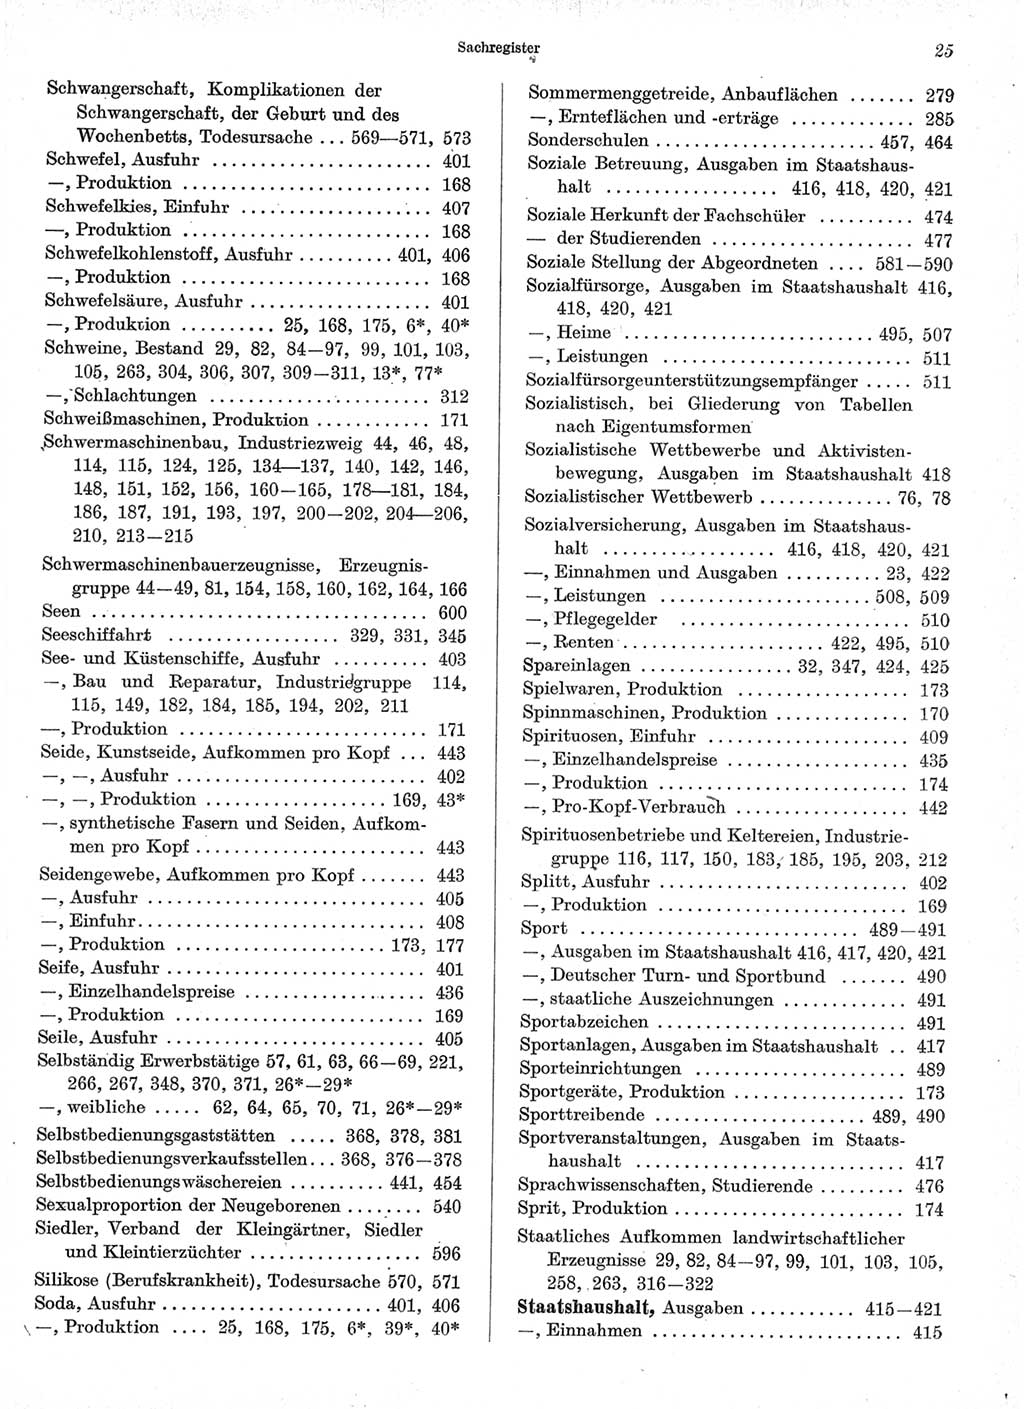 Statistisches Jahrbuch der Deutschen Demokratischen Republik (DDR) 1966, Seite 25 (Stat. Jb. DDR 1966, S. 25)